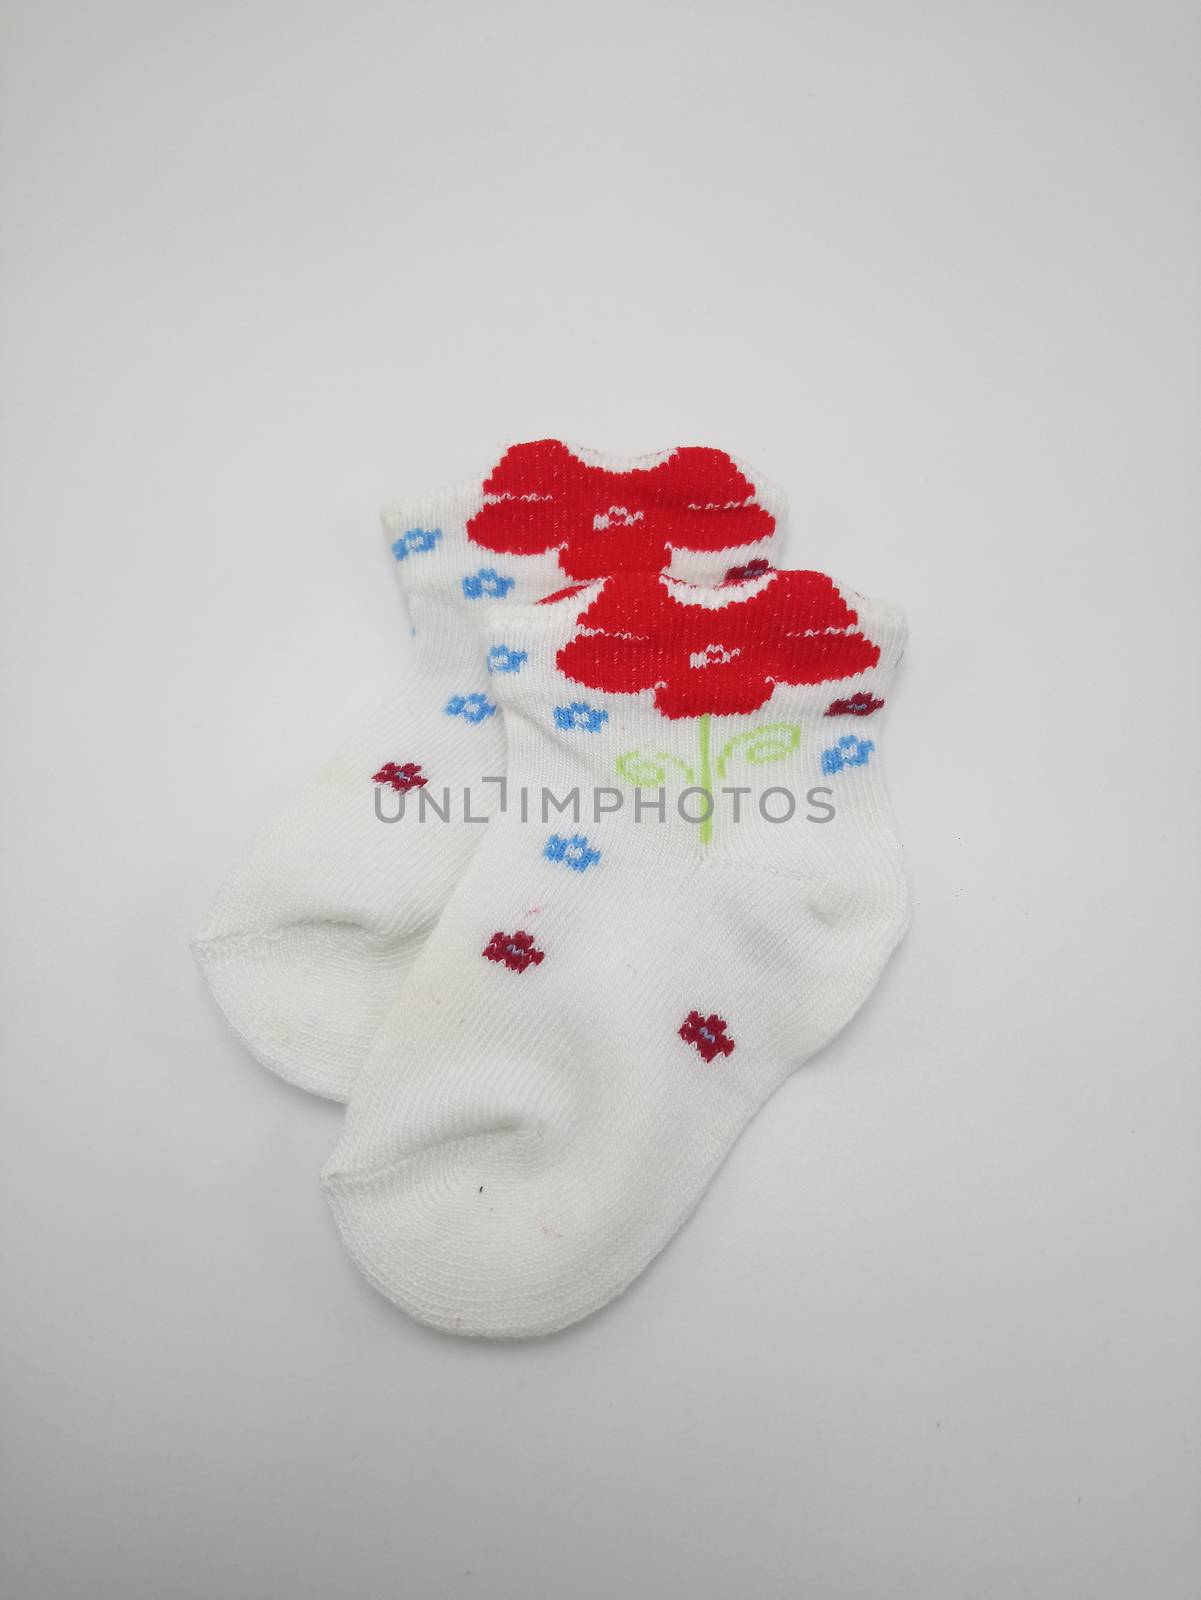 Antibacterial baby socks flower design print by imwaltersy